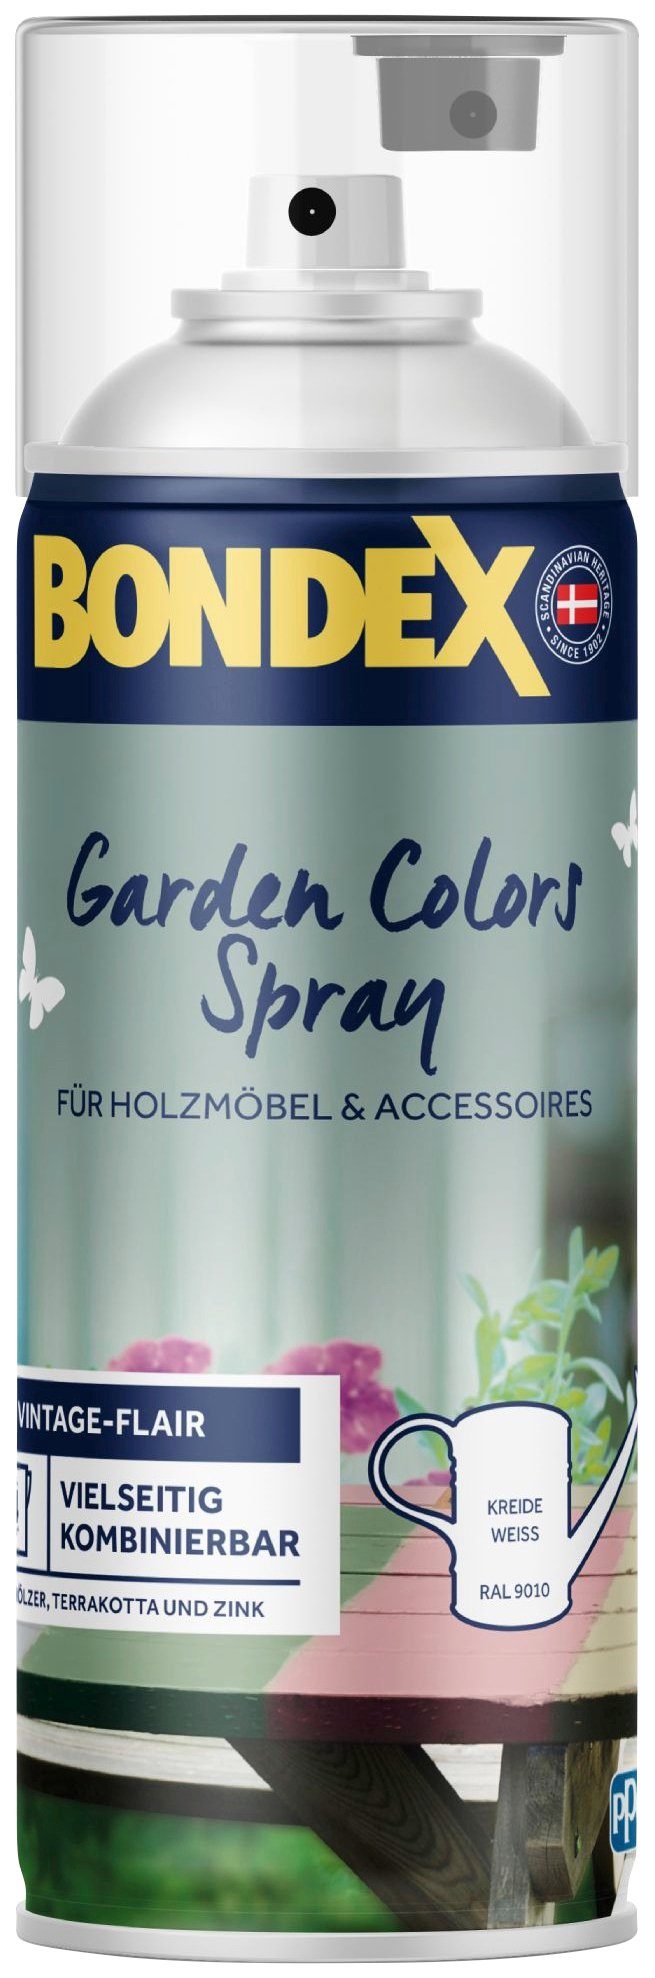 0,4 9010 RAL Spray, Bondex Inhalt / Liter Weiss COLORS Kreide GARDEN Wetterschutzfarbe Zartes Lagunenblau,